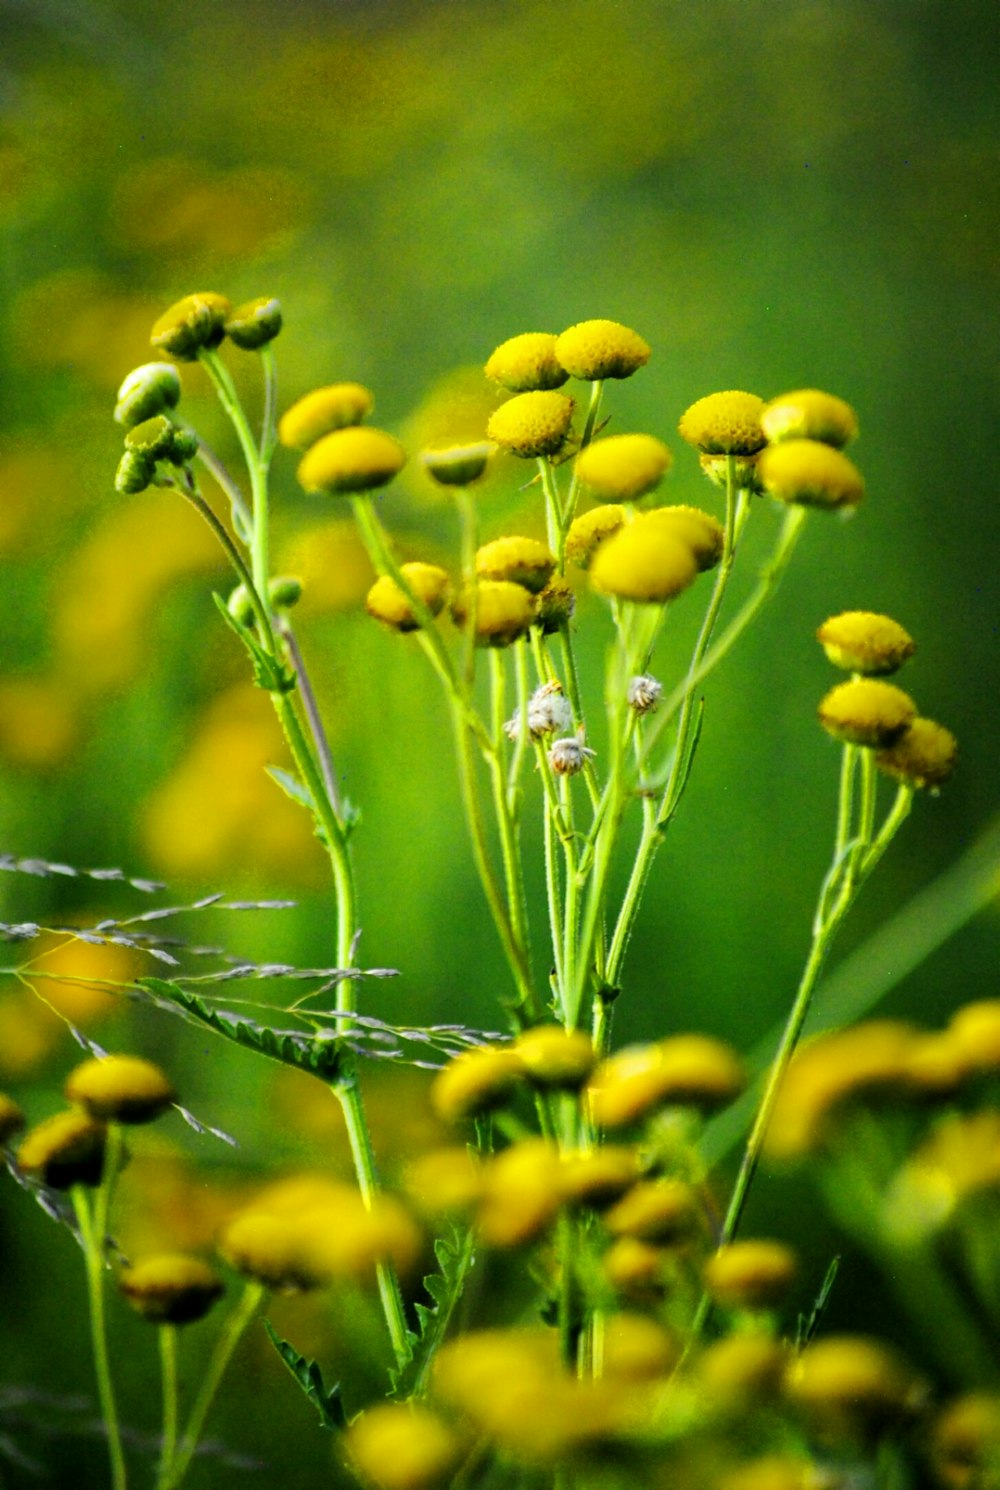 yellow flower buds in tilt shift lens